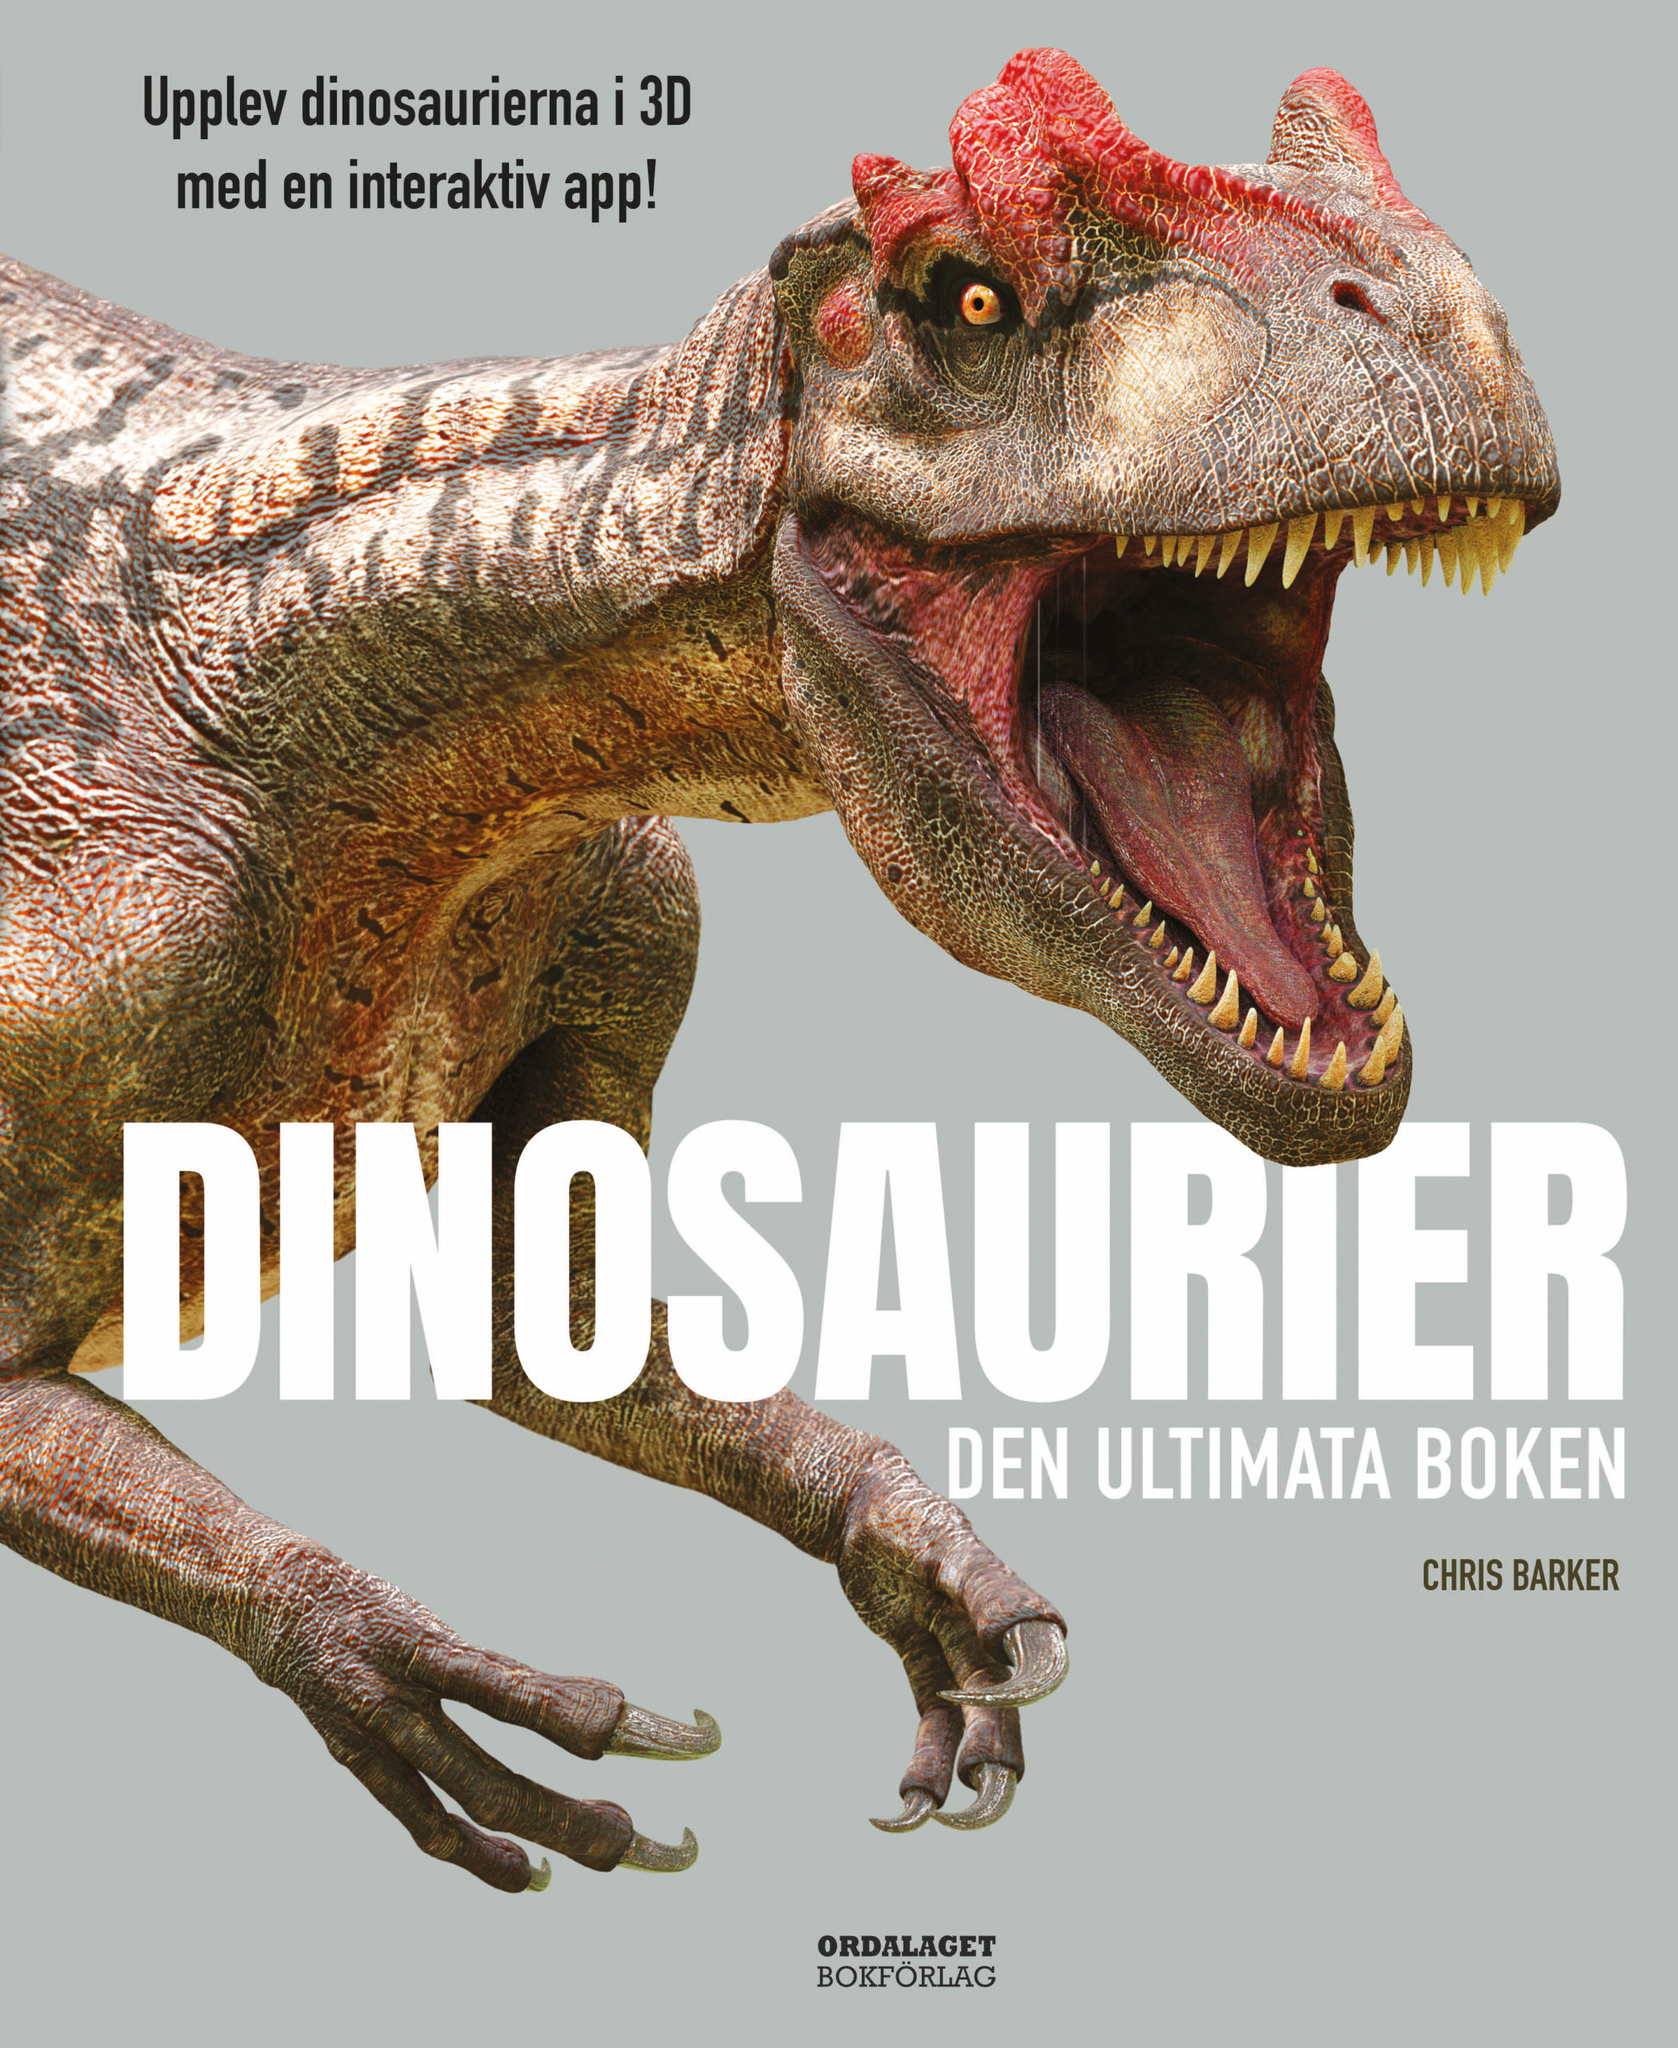 Dinosaurier: Den ultimata boken